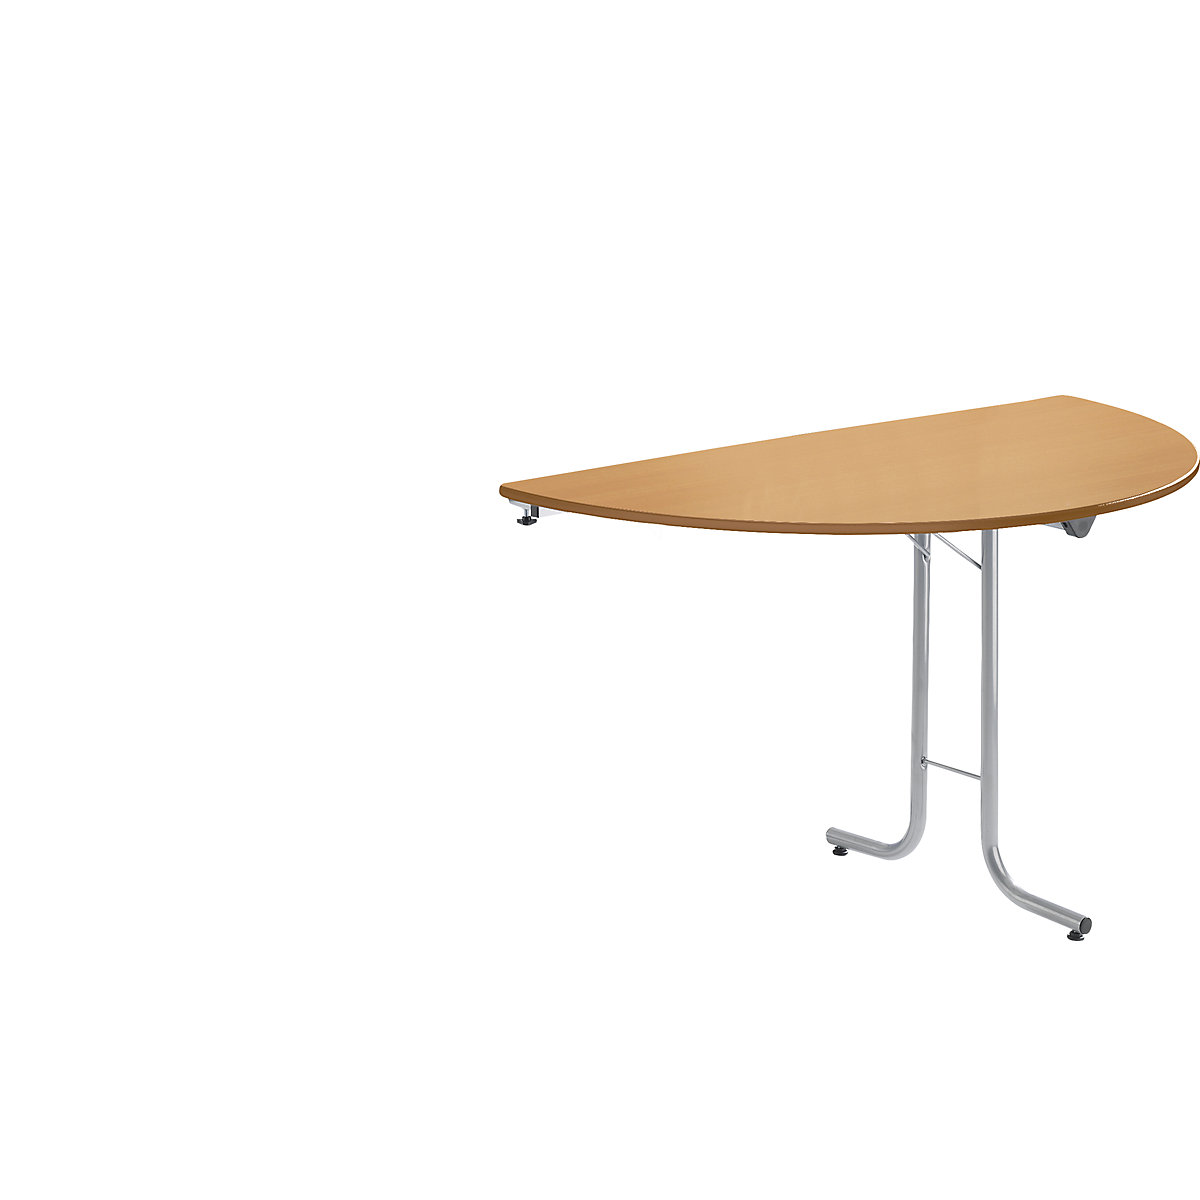 Přístavný stůl ke sklopnému stolu, půlkruhový tvar desky, 1400 x 700 mm, podstavec v barvě hliníku, deska bukový dekor-5